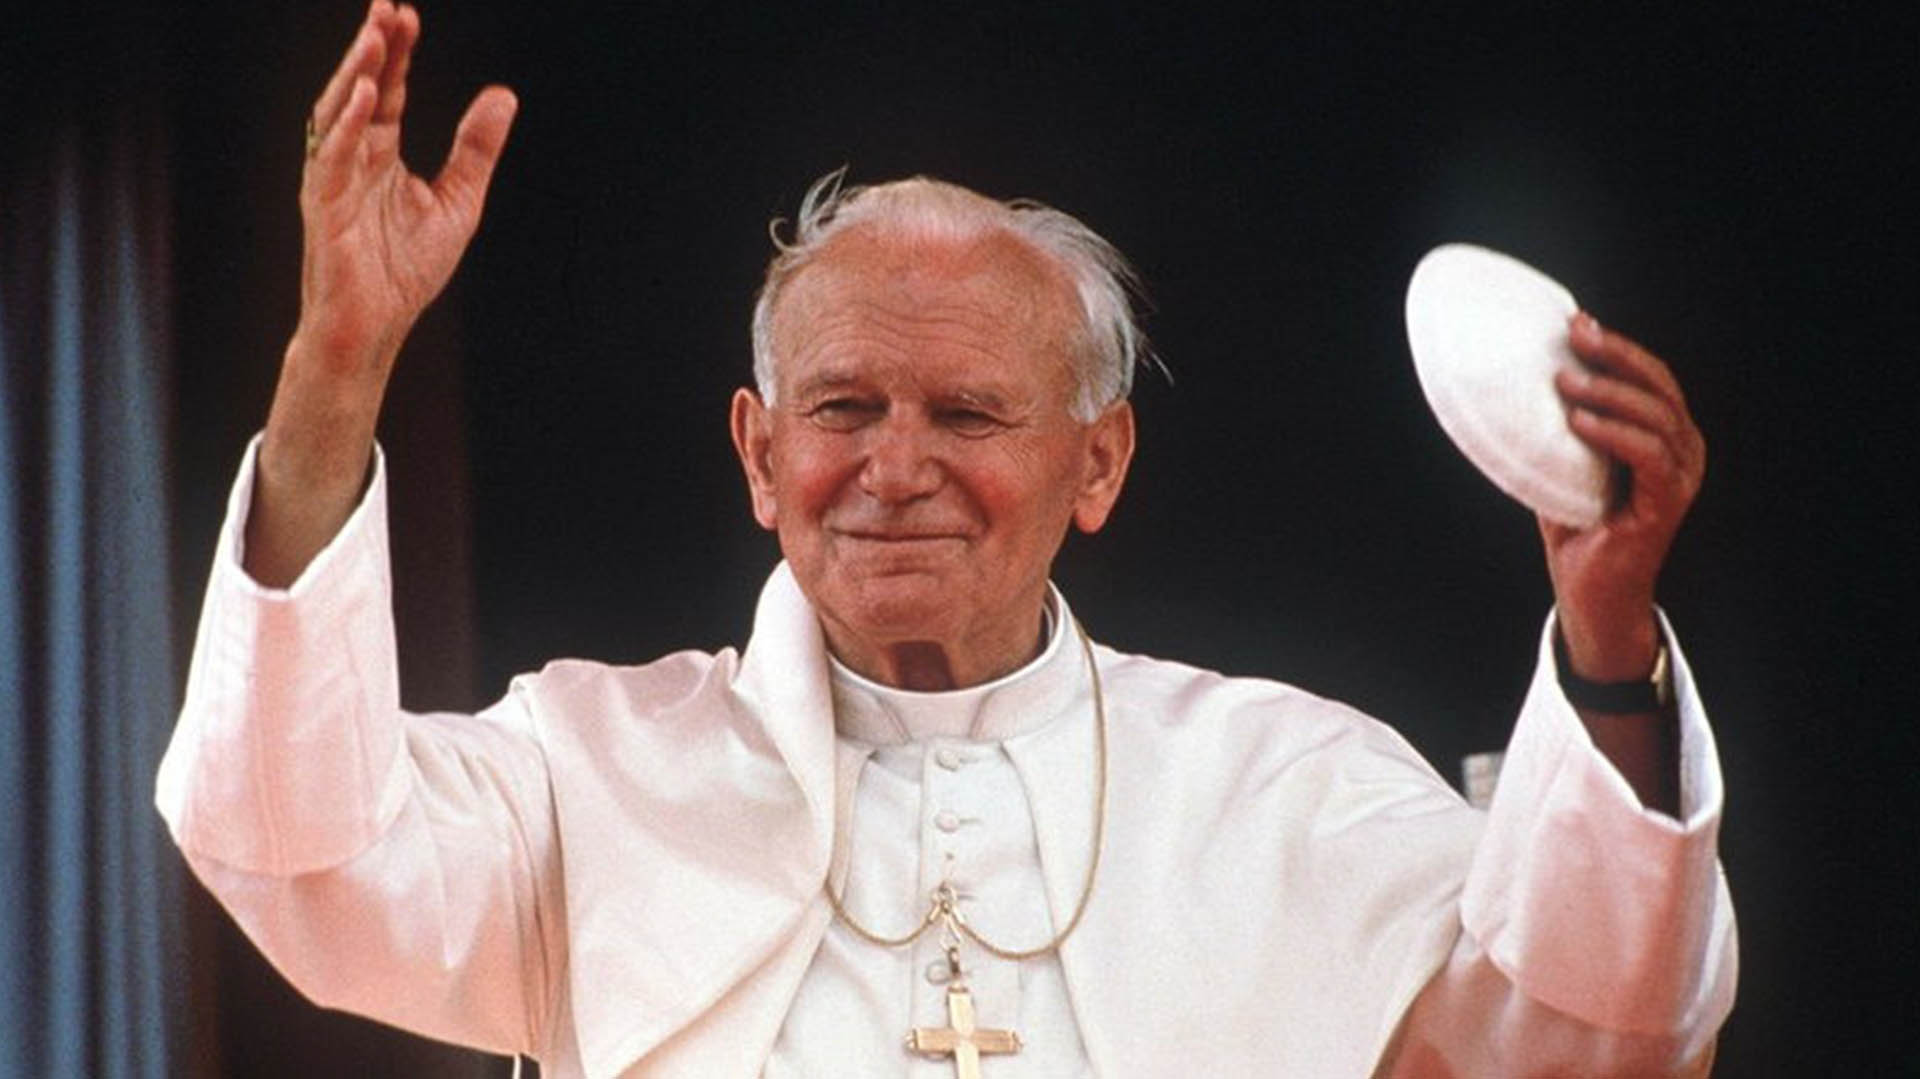 A 18 años de la muerte de Juan Pablo II, el más universal y viajero de los papas, canonizado en tiempo récord